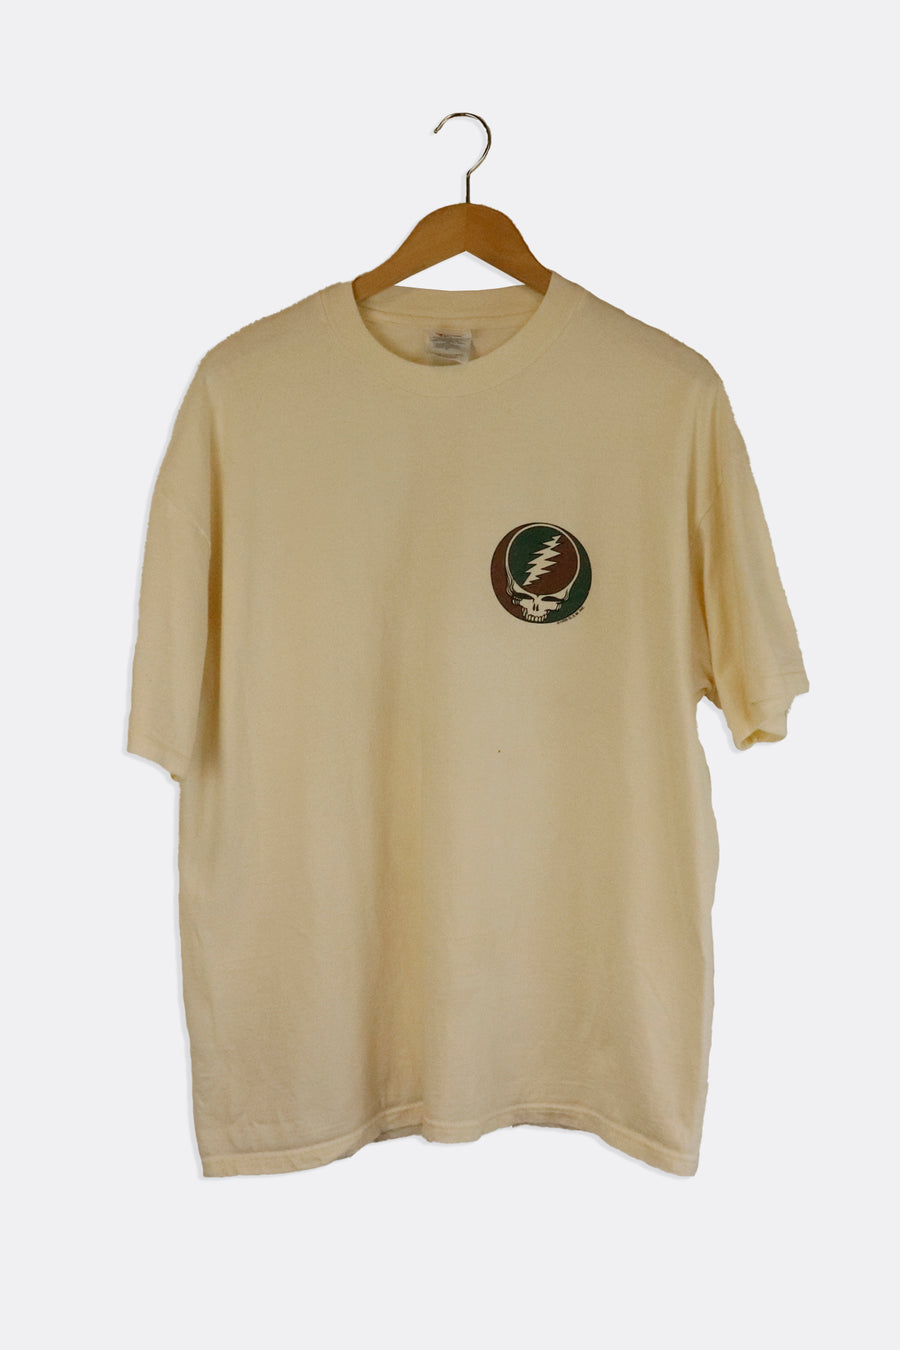 Vintage 1996 Grateful Dead Tour Dates Graphic T shirt Sz XL